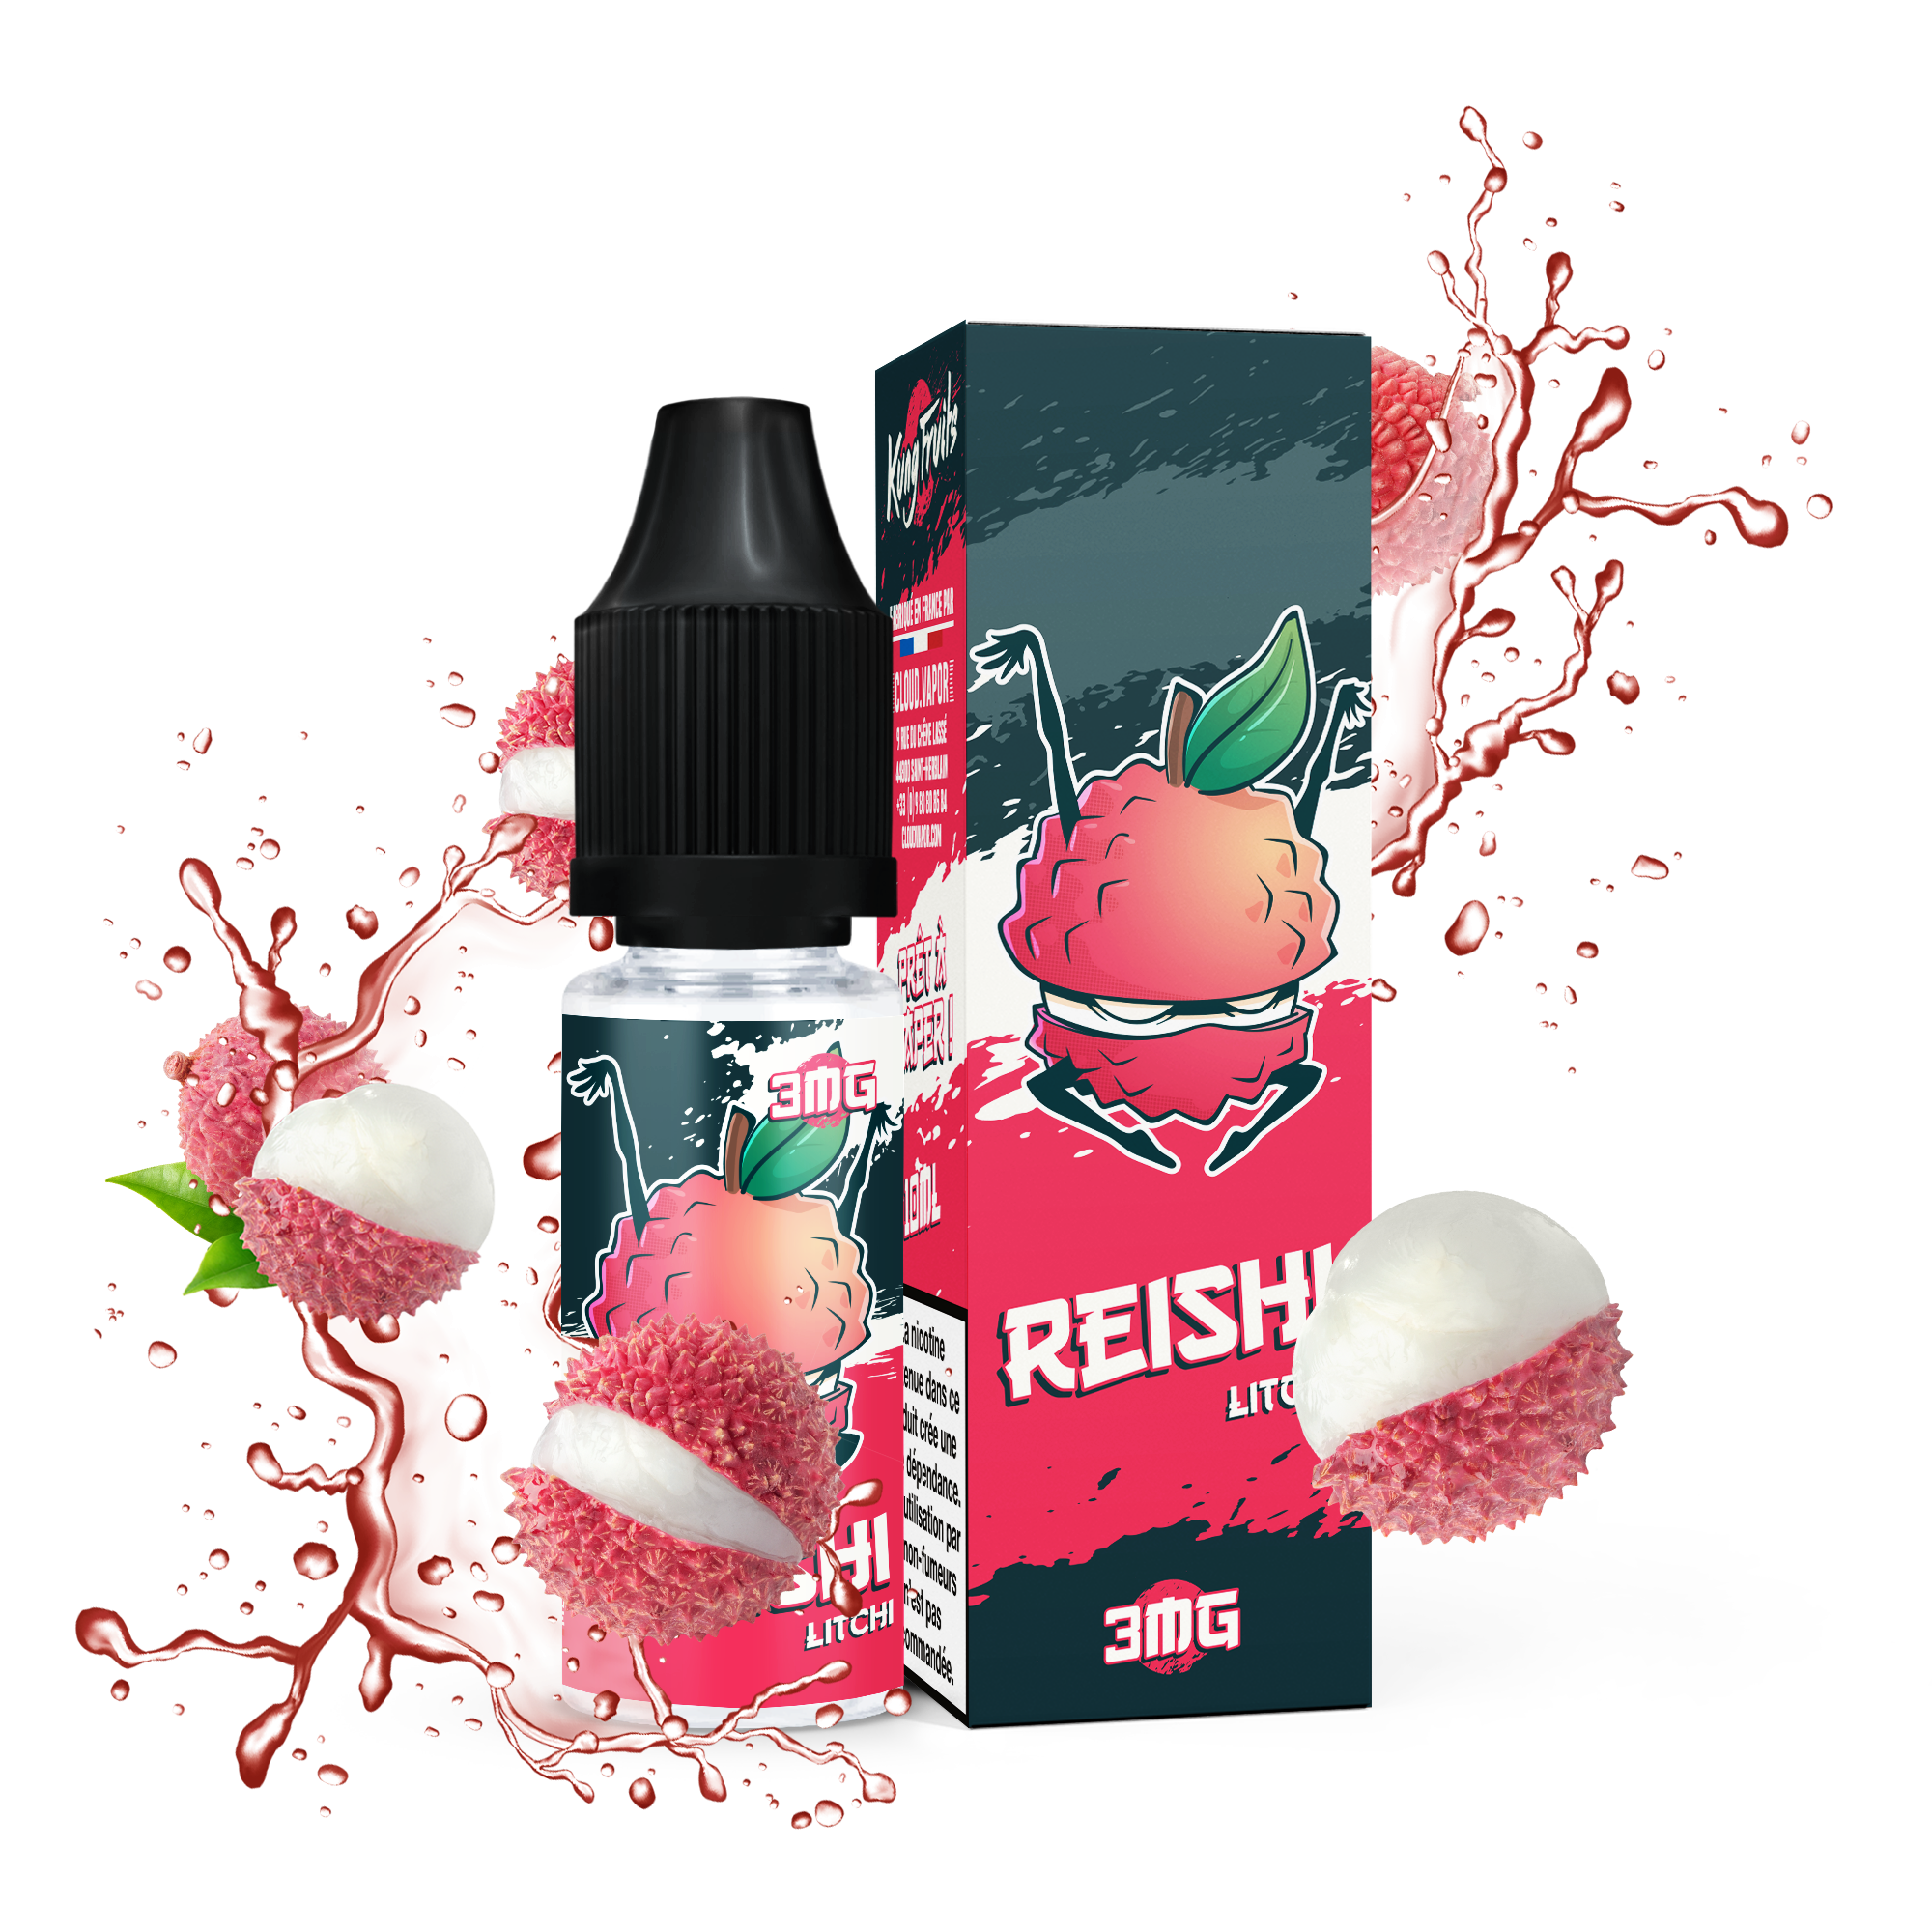 REISHI - E-liquide 10ml nicotiné